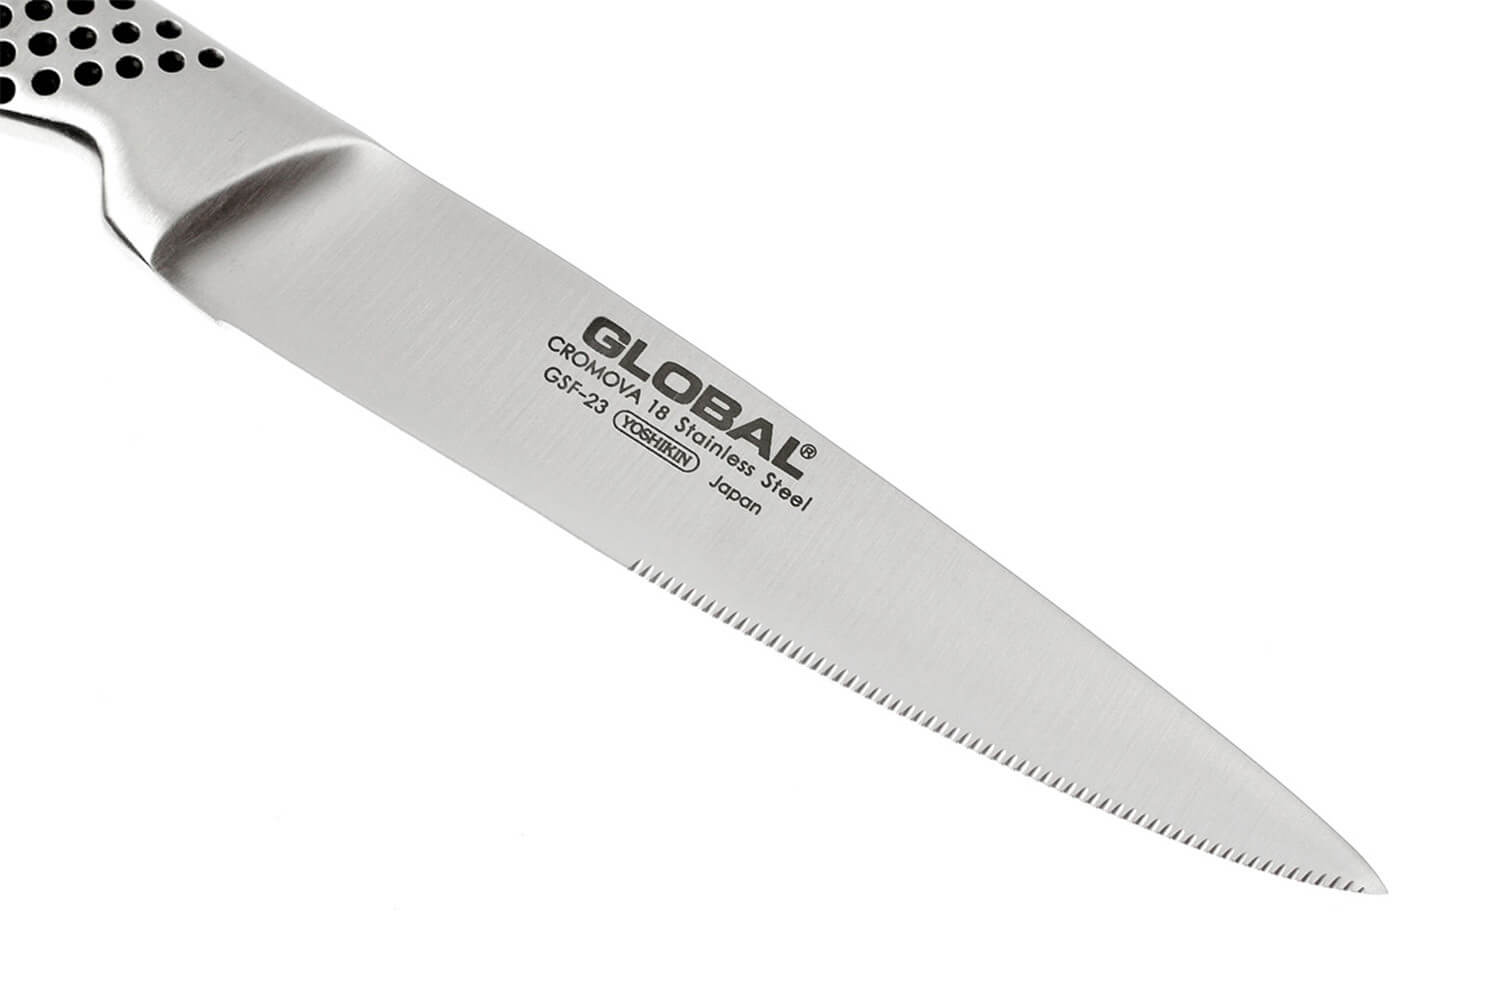 Set de 4 Couteaux à steak Global (GSF4023) - GLOBAL